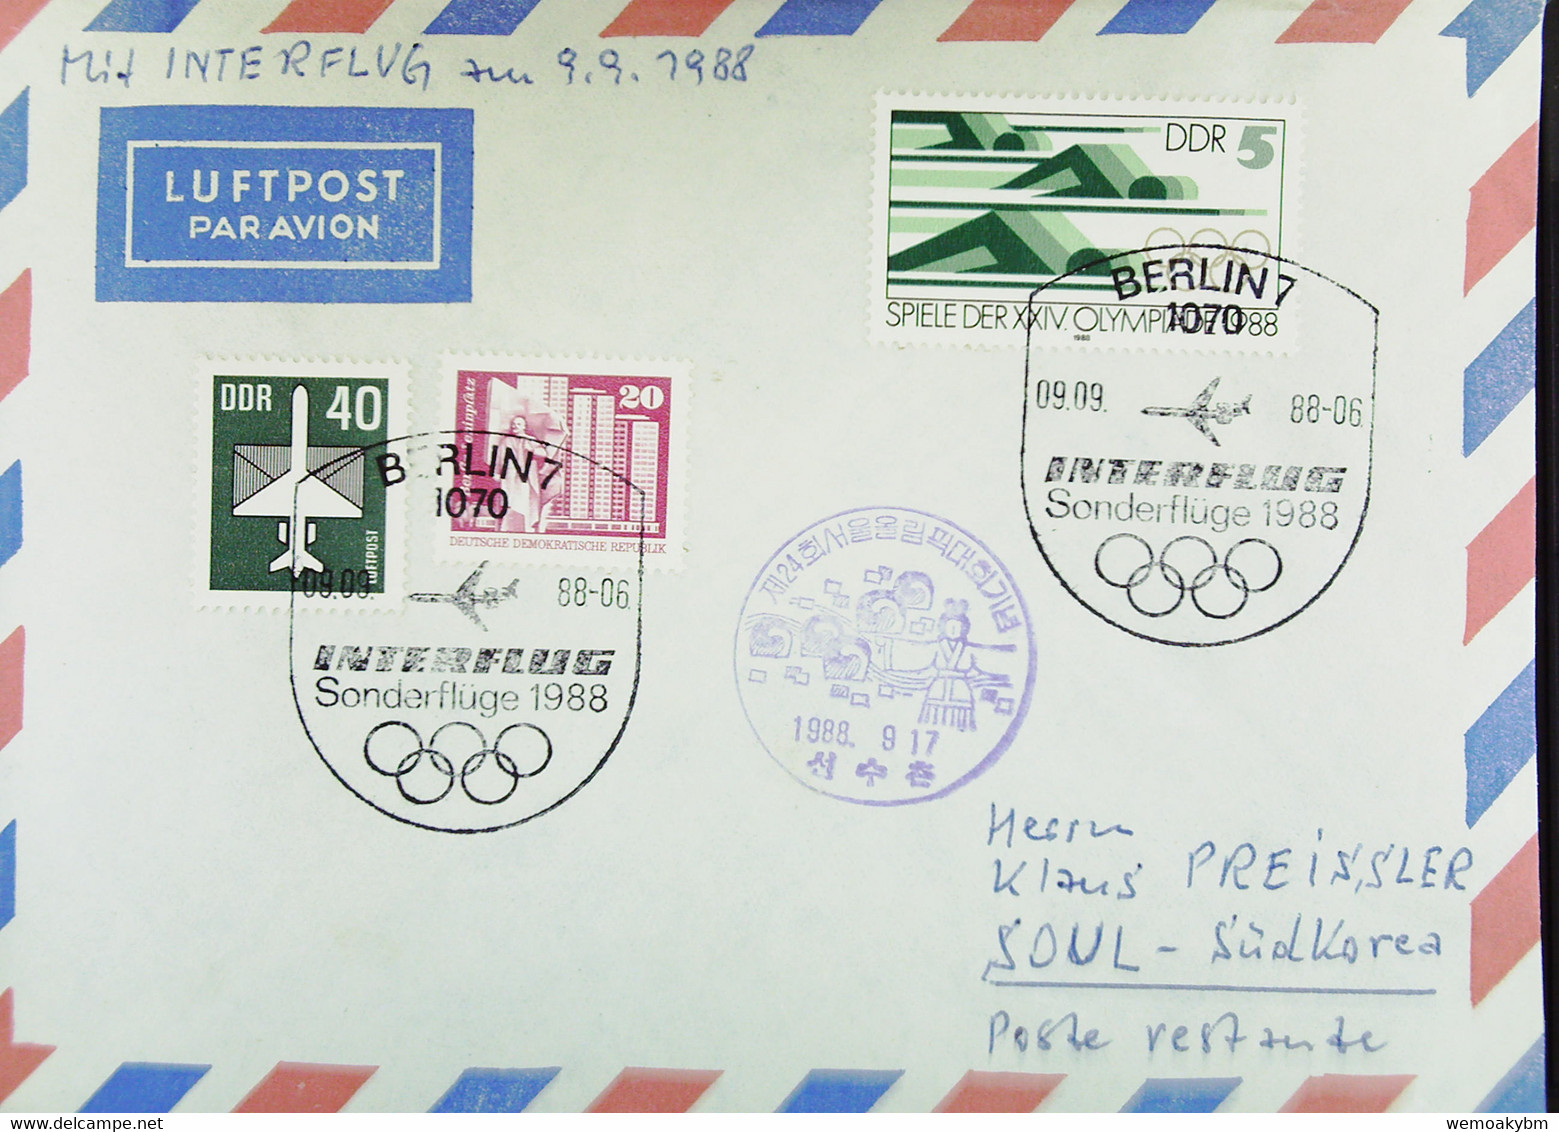 DDR: Luftpost Mit SoSt. "INTERFLUG Sonderflüge 1988 09.09.88" Von Berlin Zur Olympiade Nach Südkorea Mit Ank-Stpl. 17.9. - Poste Aérienne